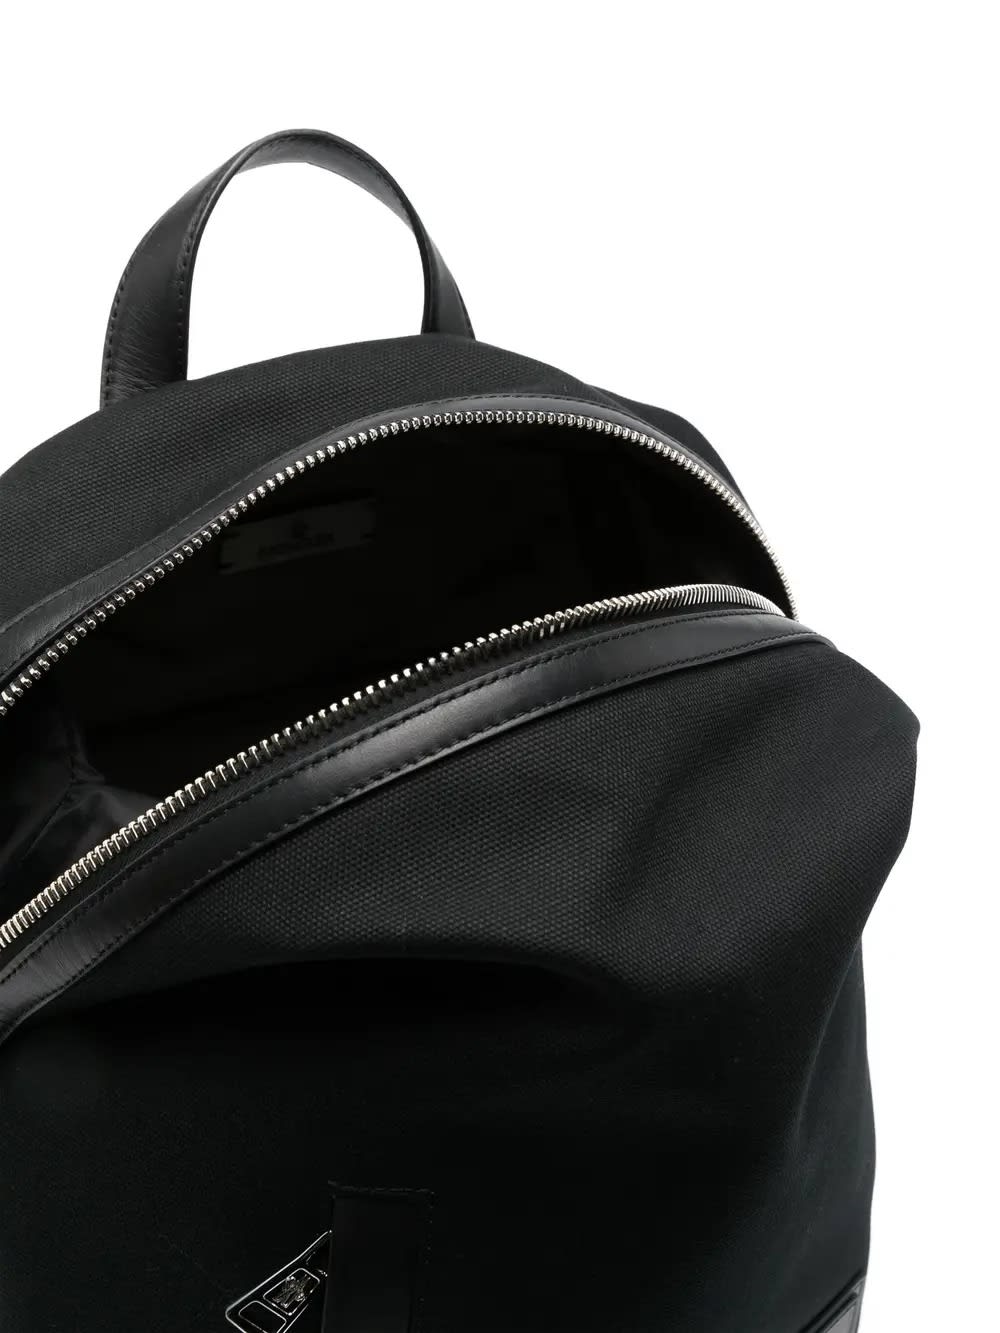 Shop Moncler Black Alanah Backpack